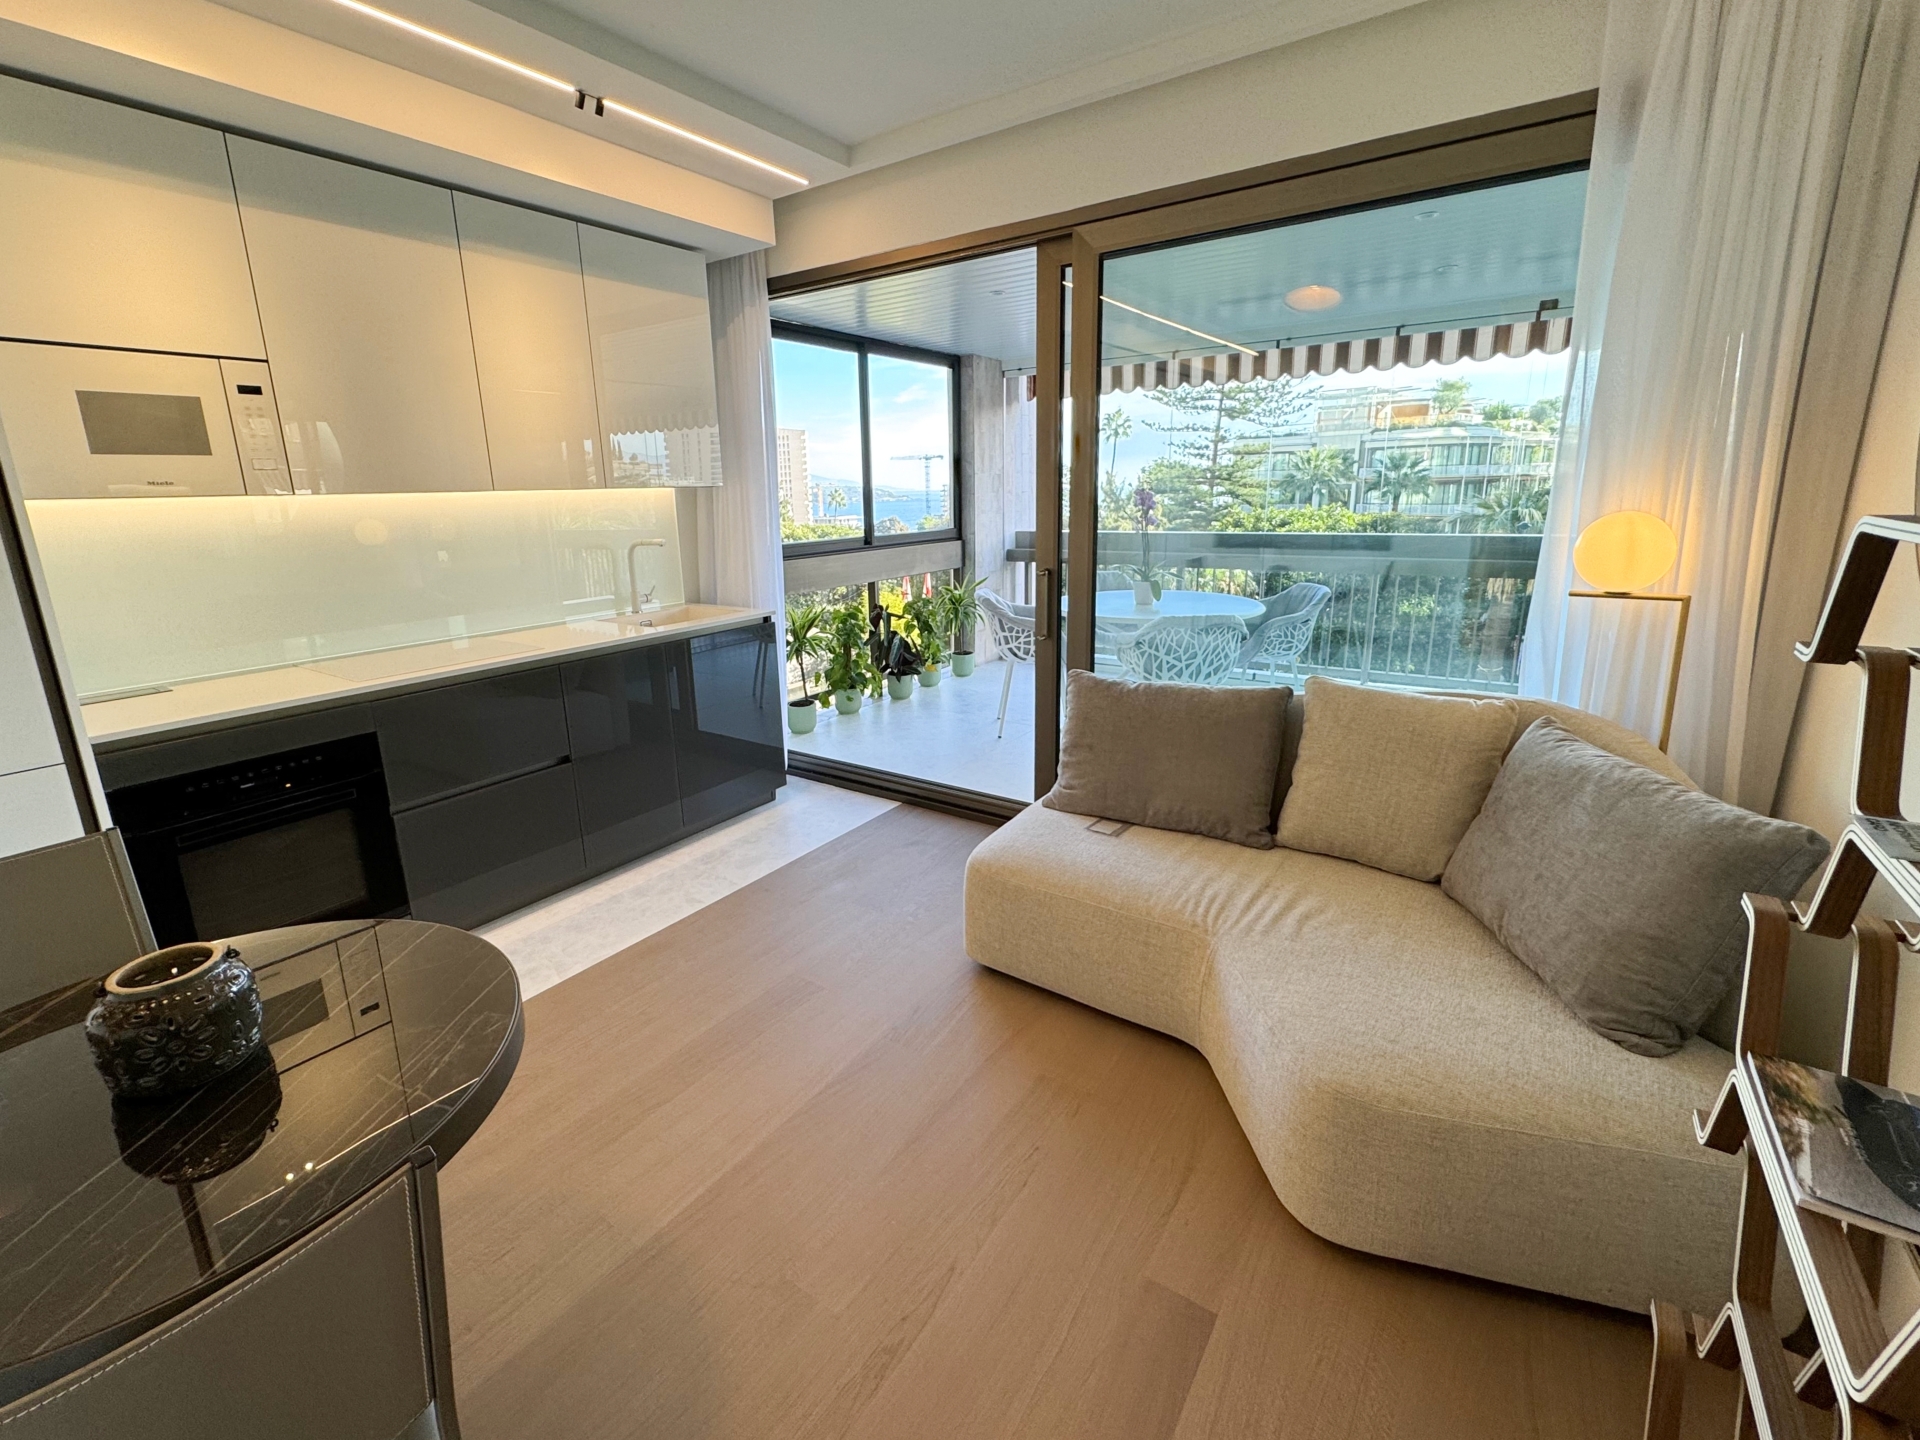 Dotta Appartement de 2 pieces a vendre - PARK PALACE - Monte-Carlo - Monaco - img3